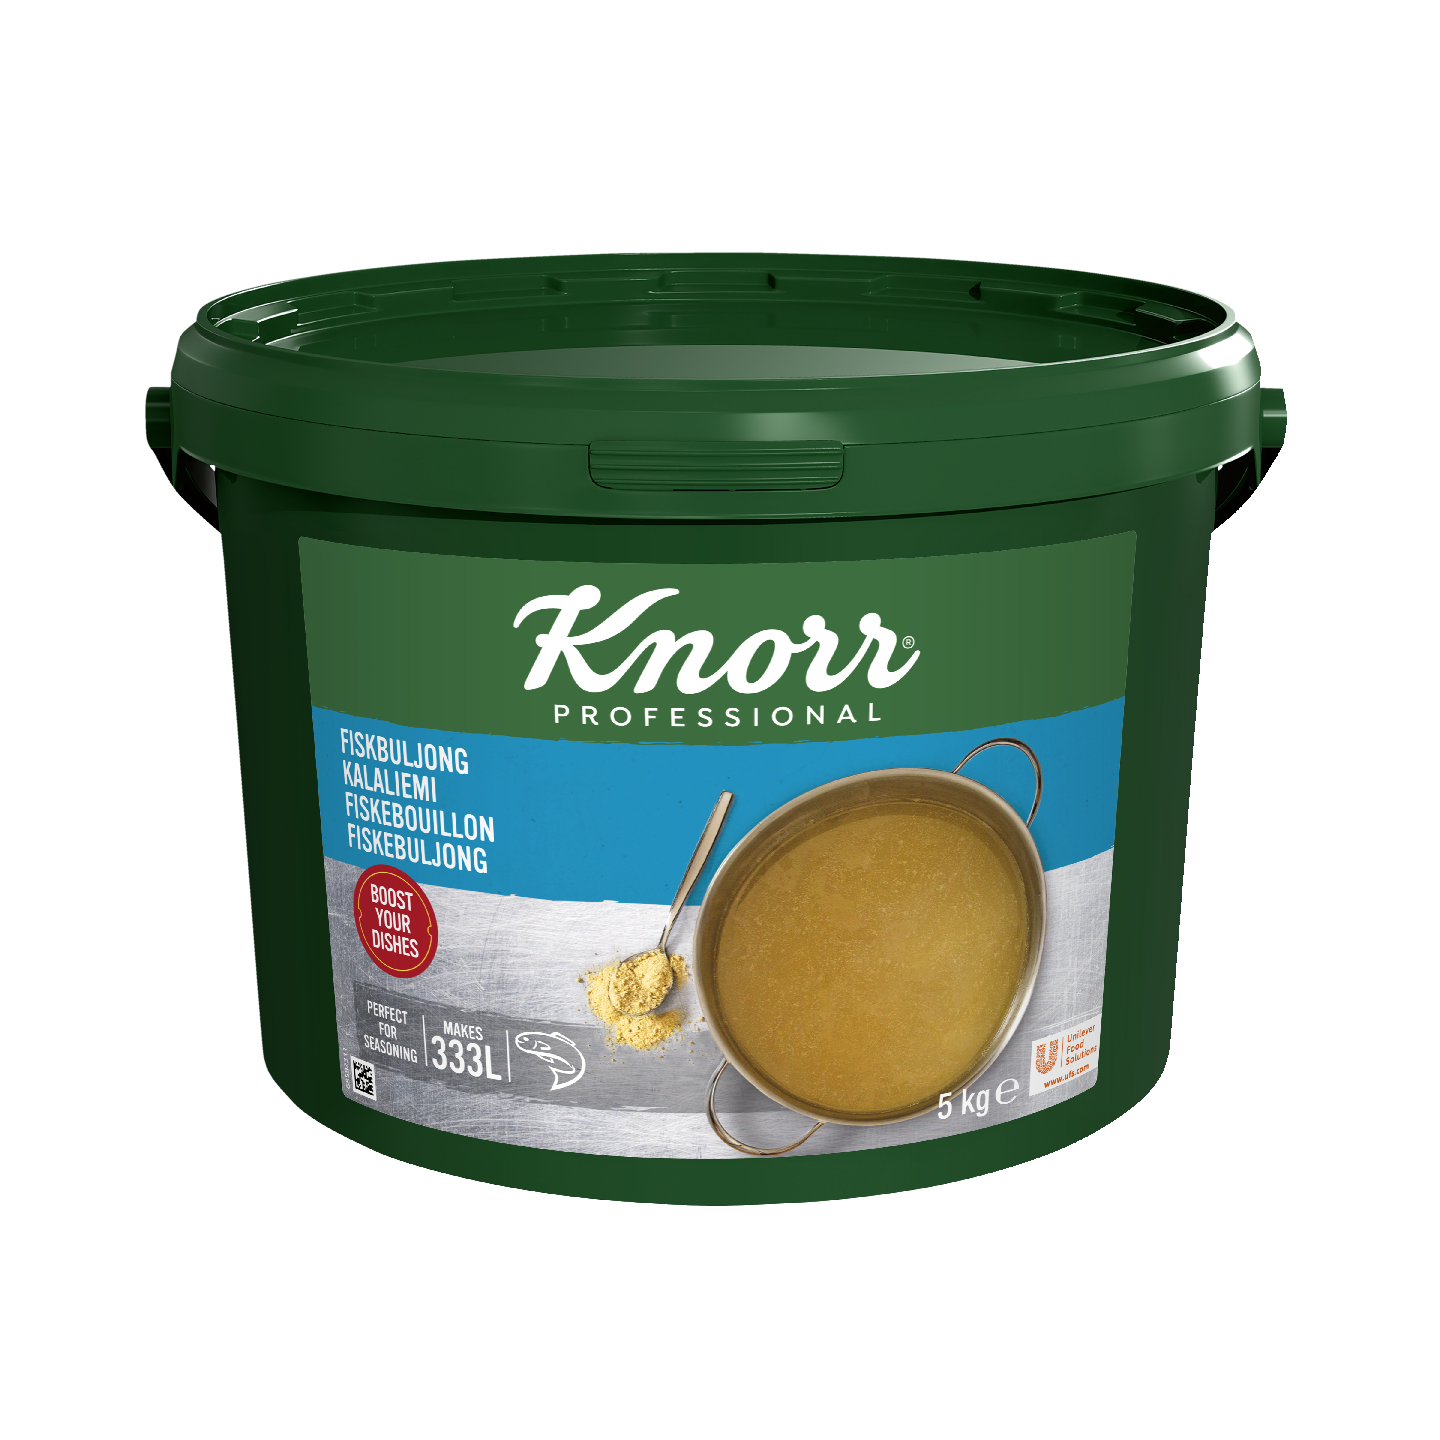 Knorr kalaliemi 5kg/333l